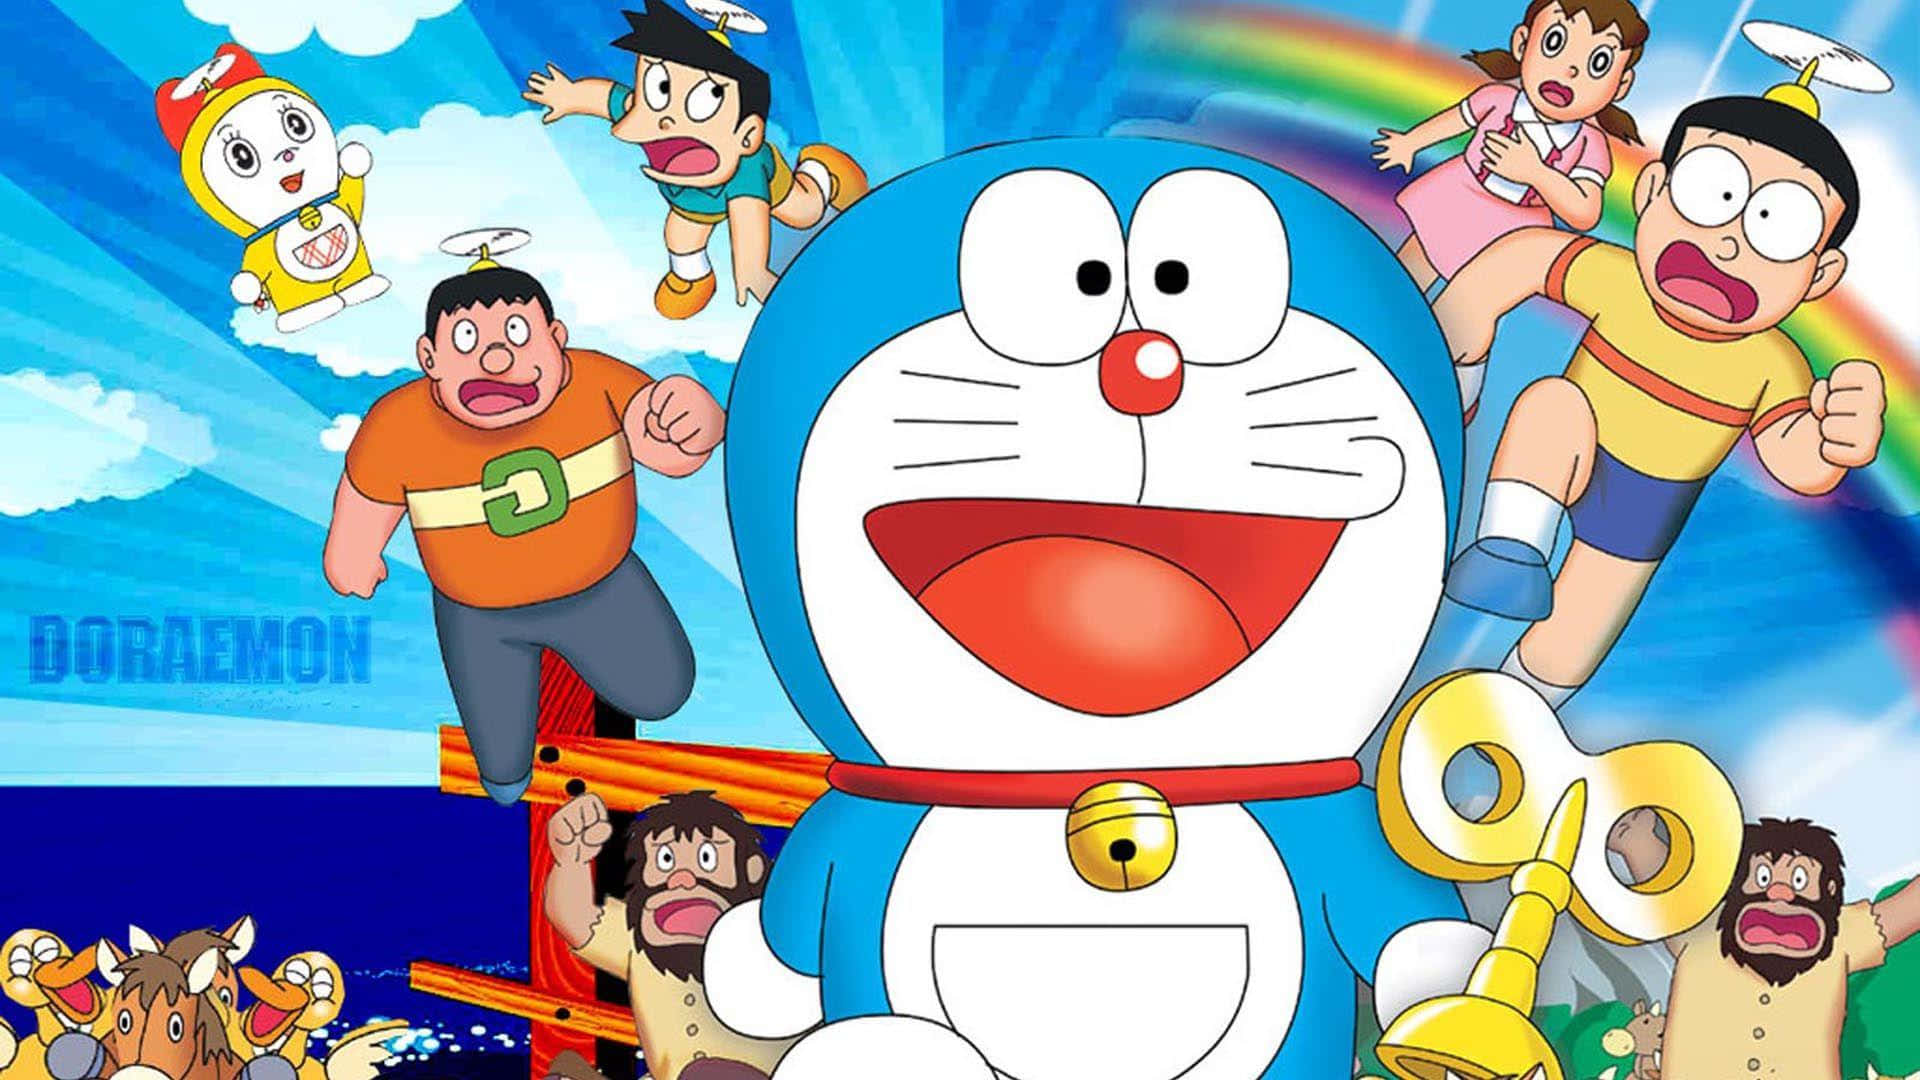 Einnahaufnahme-bild Des Beliebten Japanischen Cartoon-charakters Doraemon.